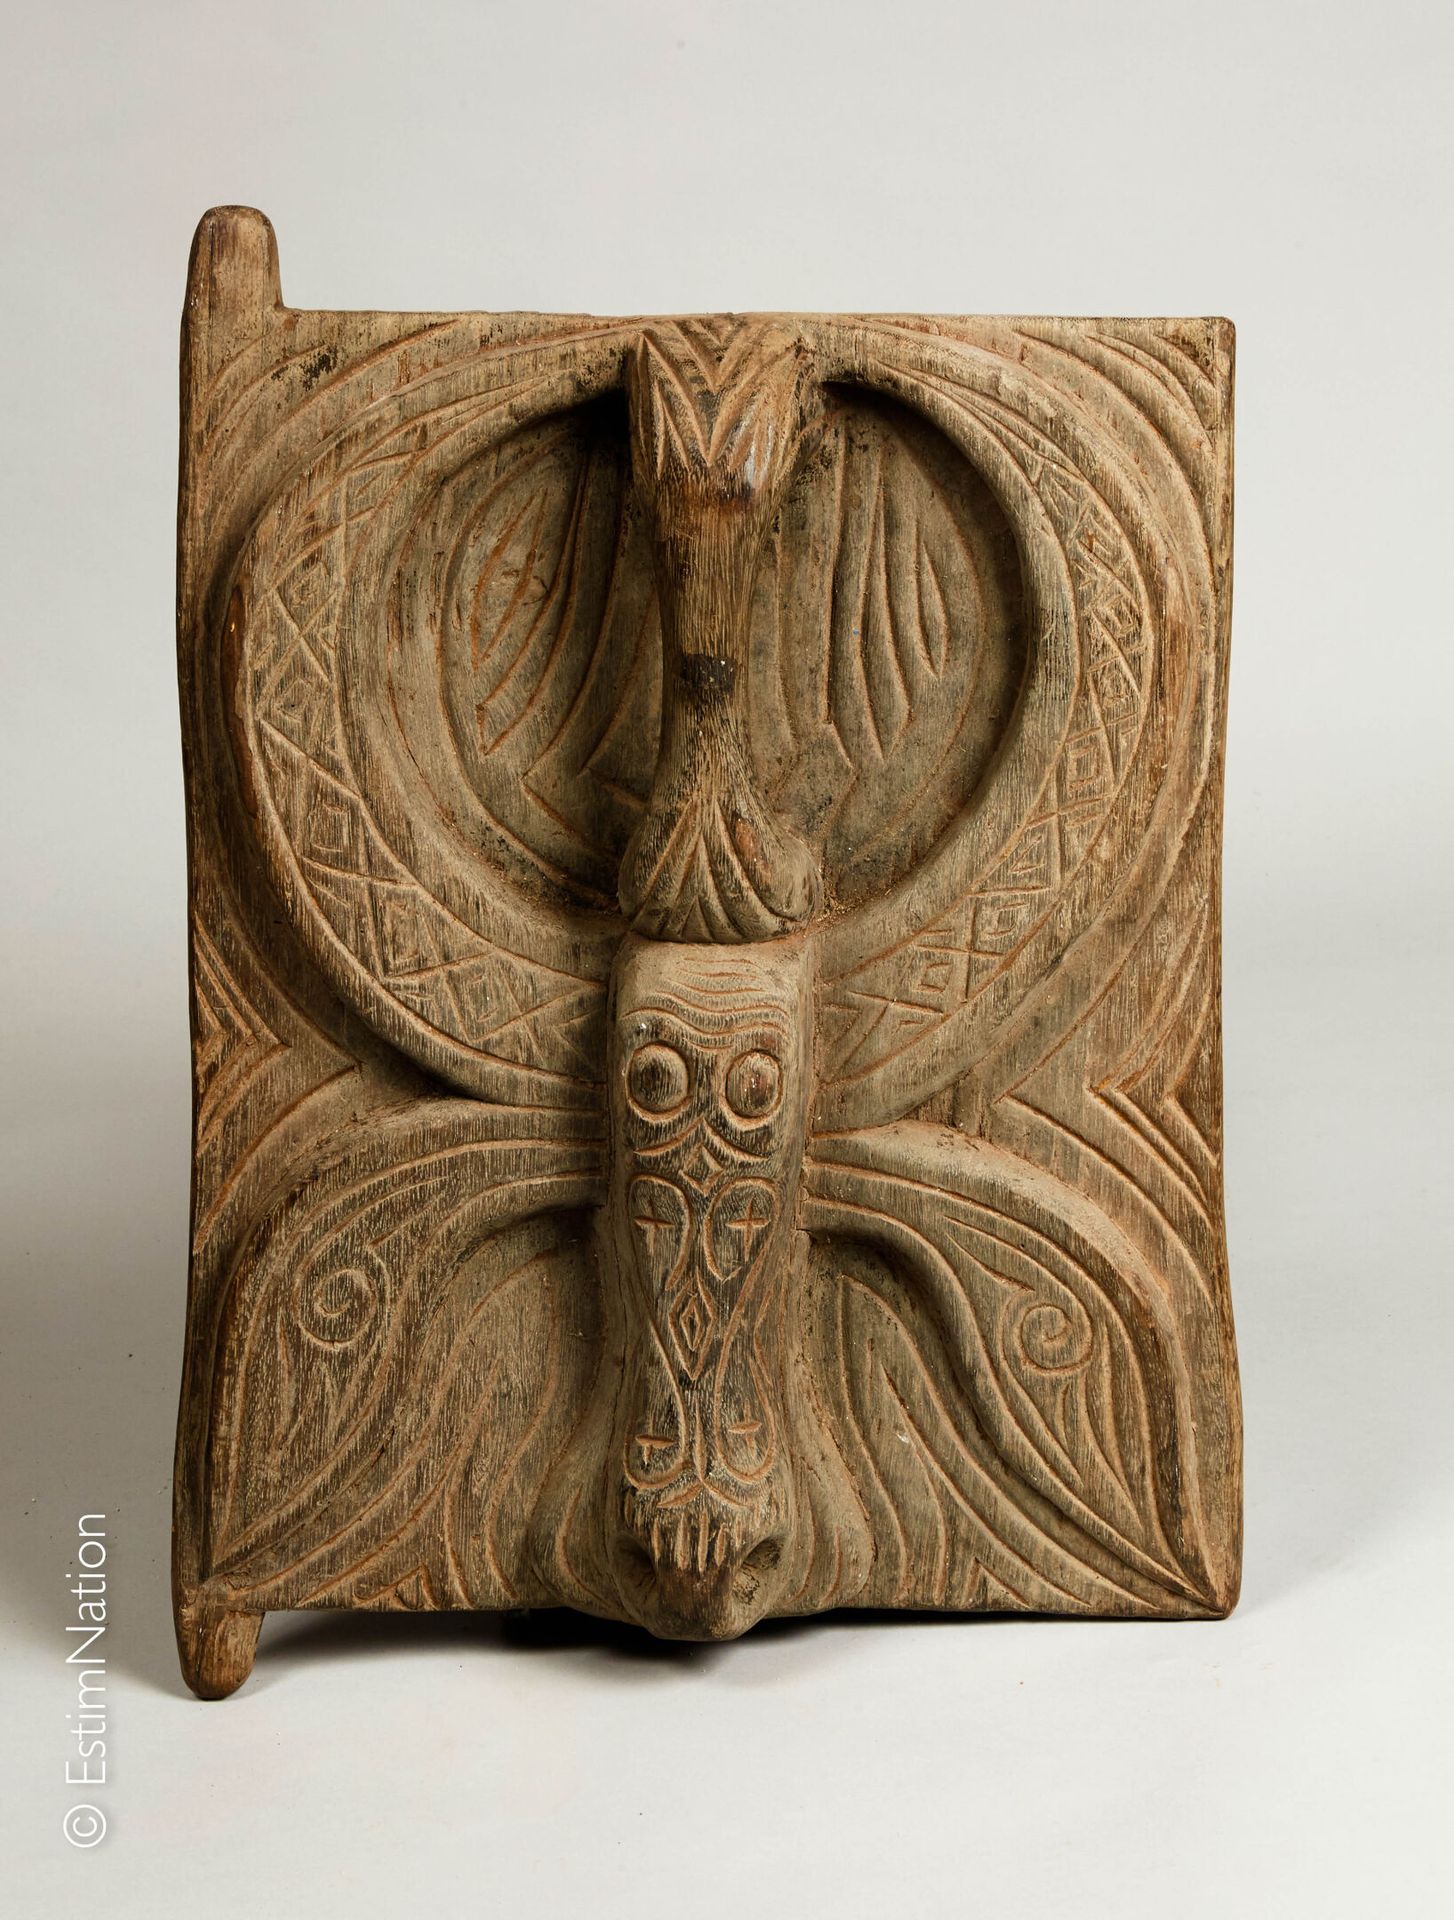 BORNEO, KALIMANTAN 婆罗洲，加里曼丹岛



雕刻和镌刻的木制米仓门，装饰着一个造型优美的水牛头，头骨顶部有一个把手。



高度 : 57 &hellip;